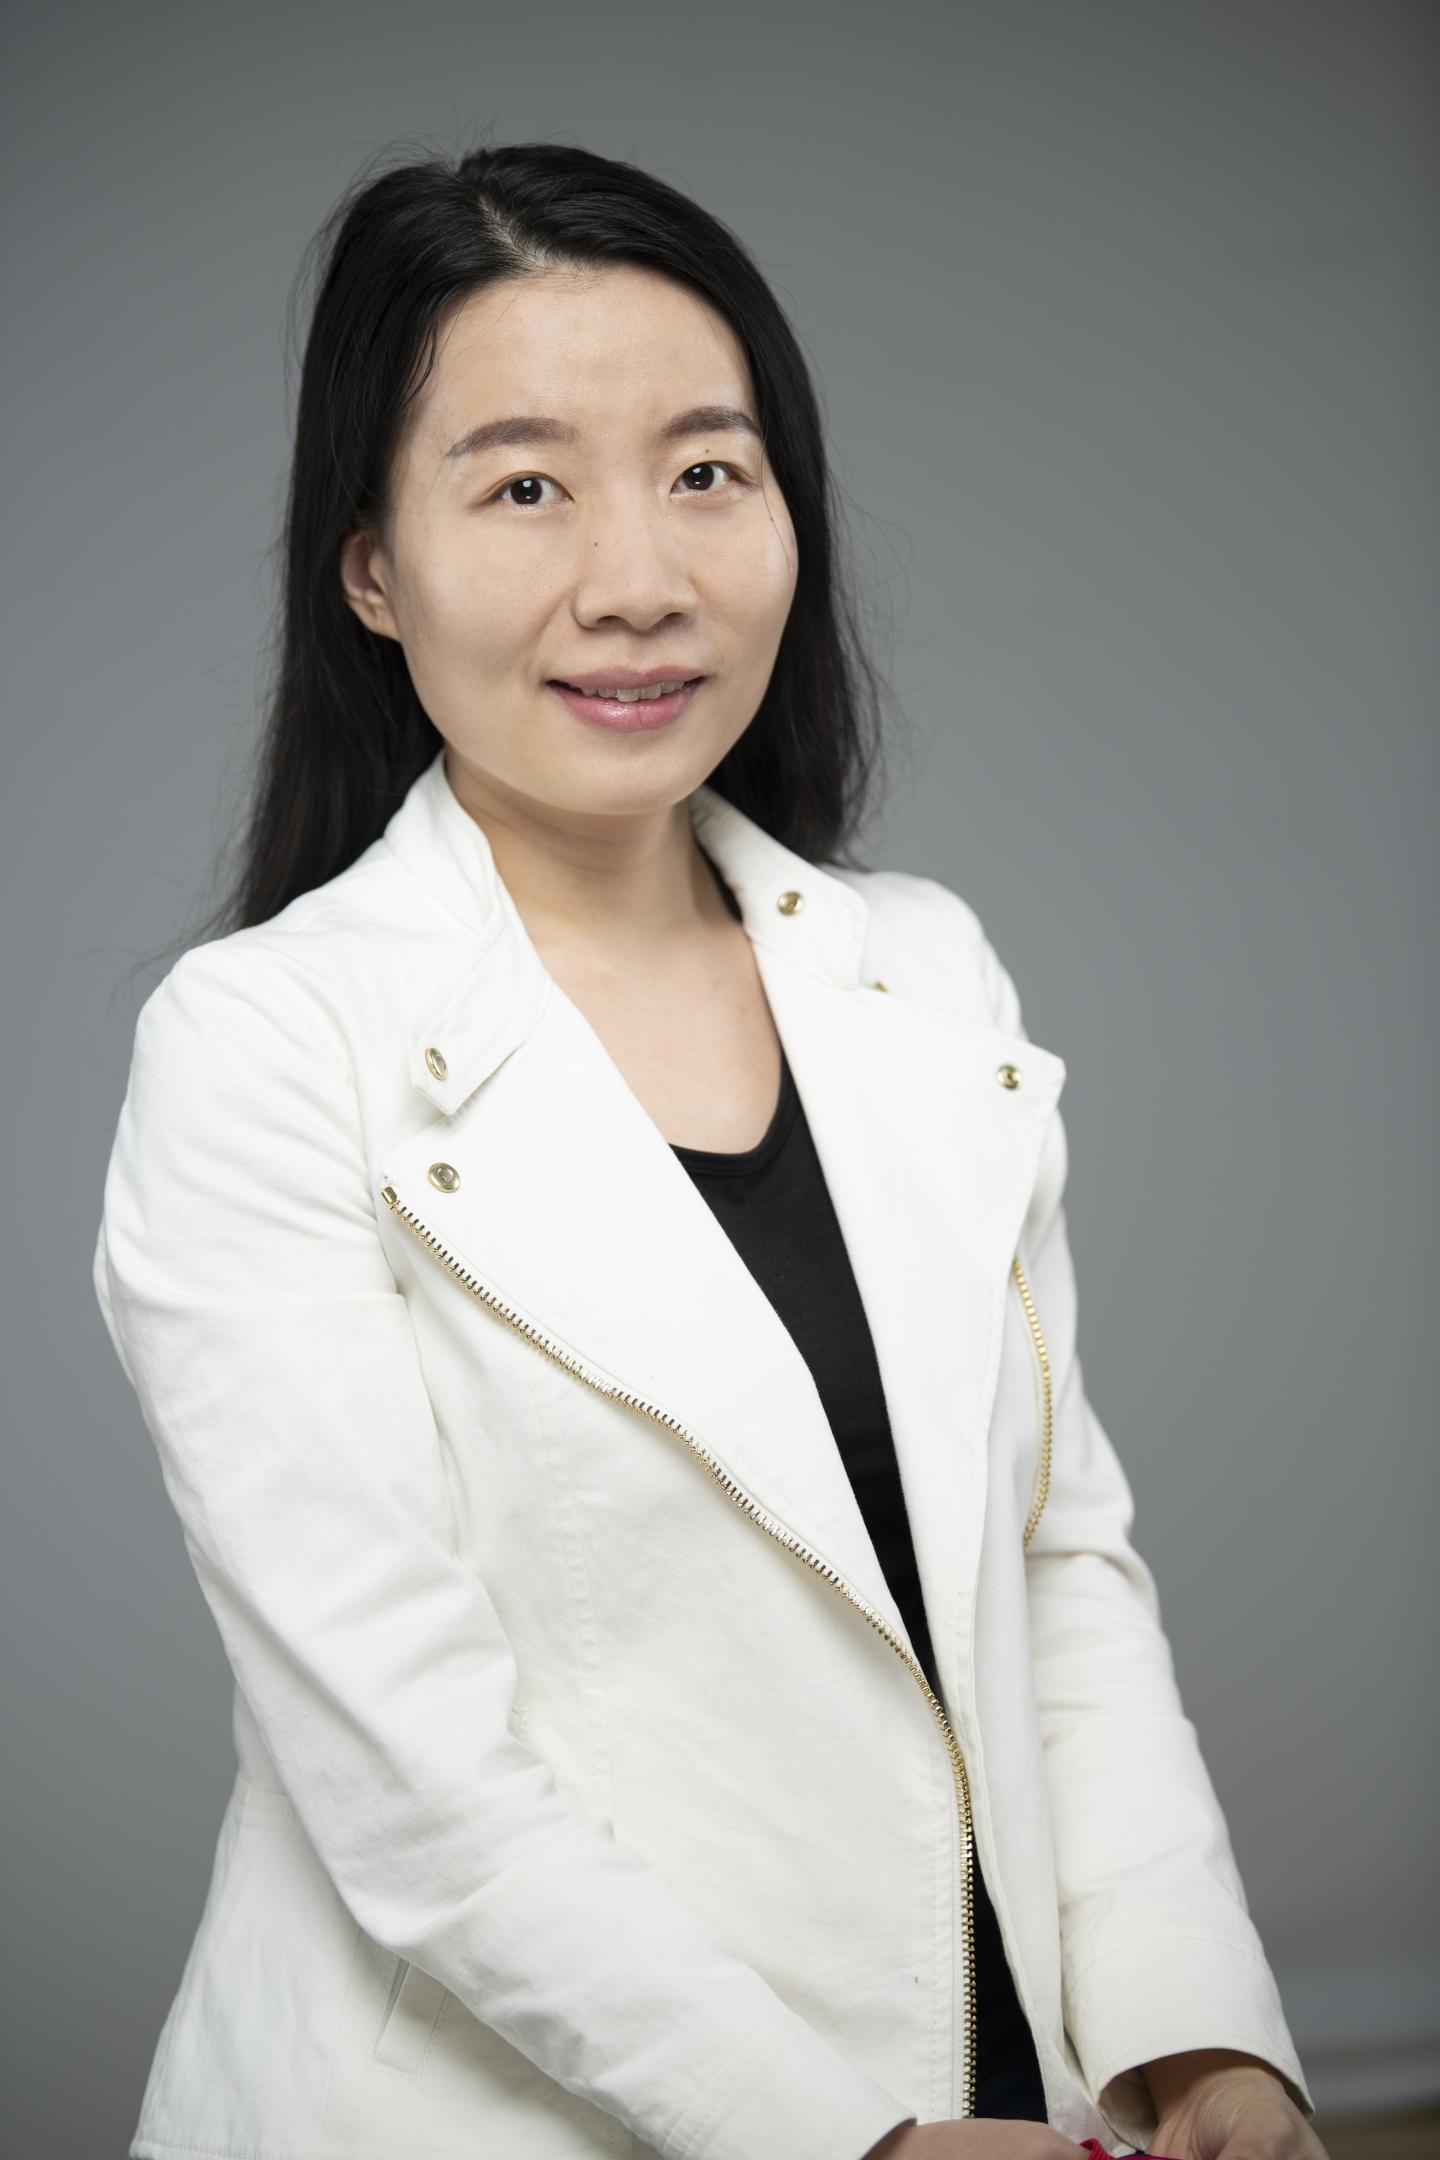 Yao Wu, Ph.D.